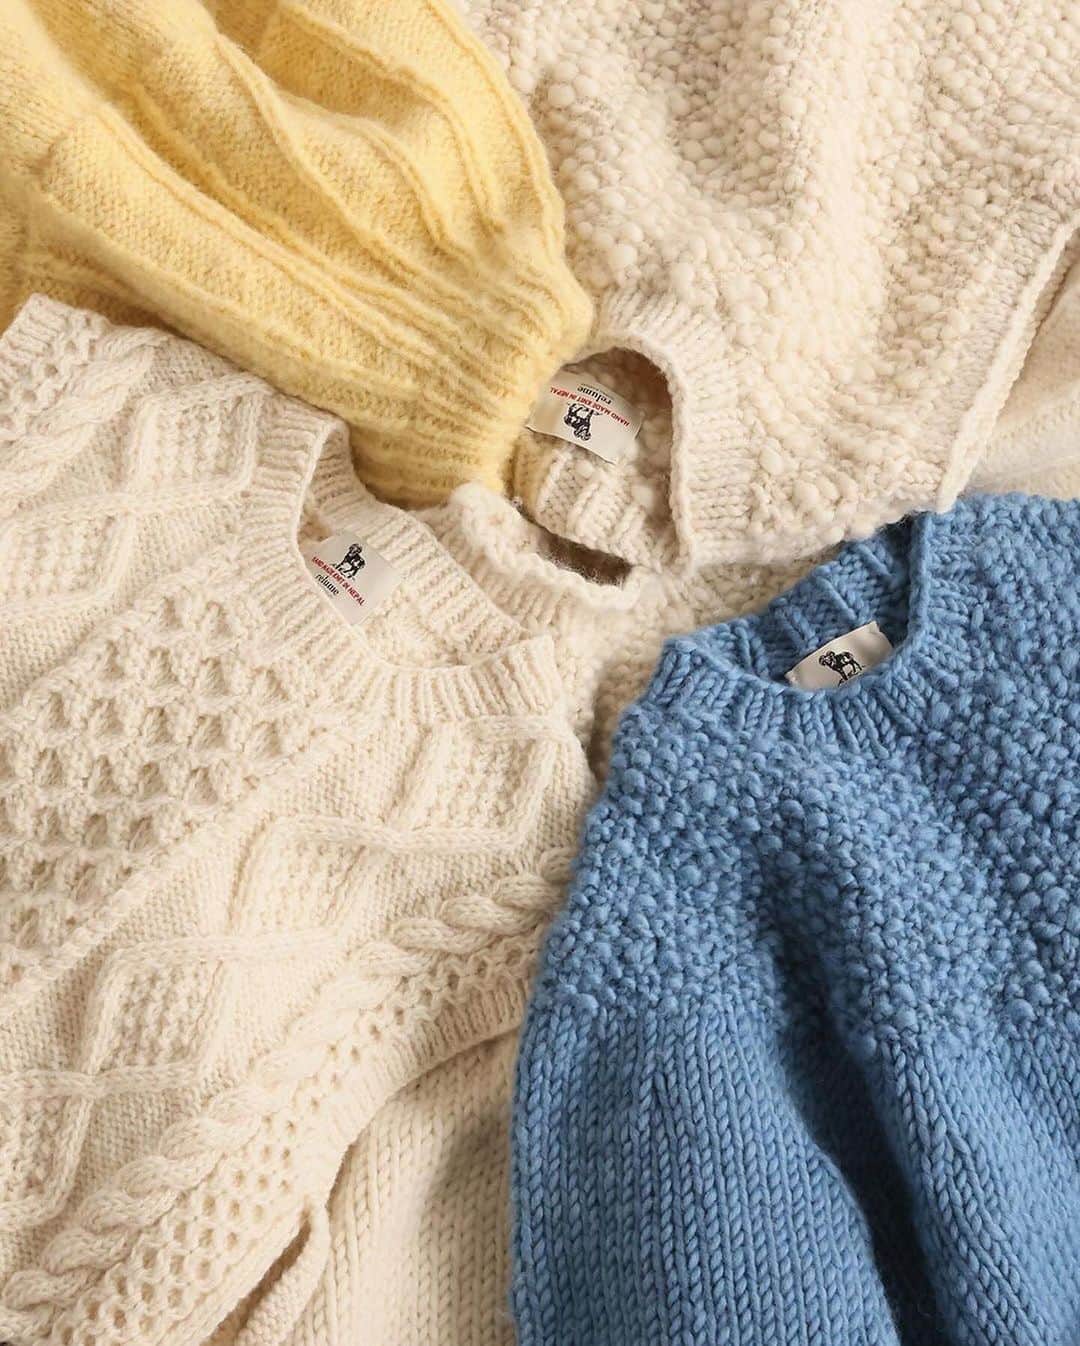 トライセクトのインスタグラム：「𝙉𝙚𝙥𝙖𝙡 𝙝𝙖𝙣𝙙 𝙠𝙣𝙞𝙩 🧶 手編みならではの暖かみのある風合いが特徴のハンドニットシリーズ。 ⁡  JOURNAL STANDARD relume @js_relume   ポコポコとした素材感や編み地が、見た目も暖かくこれからの季節にぴったり。 ⁡ ⁡カラフルなニットから、レイヤードが楽しめるベストまで。 ぜひ一度お試しください✨ ⁡  ⁡  ——————— ⁡  ネパールハンドニットスラブプルオーバー ¥23,100(税込) 𝗇𝗈.23080462930040 ⁡  ネパールハンドニット求心プルオーバー ¥19,800(税込) 𝗇𝗈.23080462910040 ⁡  ネパールハンドニットスラブベスト ¥17,600(税込) 𝗇𝗈.23080462920040  ⁡ ネパールハンドニットケーブルベスト ¥17,600(税込) 𝗇𝗈.23080462900040 ⁡ 　  　　 　　 　 ＿＿＿＿＿＿＿＿＿＿＿＿＿🏷️ ⁡ いつも投稿をご覧いただきありがとうございます！ ベイクルーズ公式インスタグラムでは WOMEN & MENの新作情報を毎日配信中📷 是非フォローしてね ♪ ▼▼▼ @baycrews ＿＿＿＿＿＿＿＿＿＿＿＿＿＿ ⁡ #baycrews #journalstandardrelume #ベイクルーズ #レリューム #アウターコーデ #コートコーデ #パンツコーデ #スカートコーデ #シャツコーデ #大人コーデ #着回し #着回しコーデ #20代コーデ  #30代コーデ#40代コーデ #トレンドコーデ #スタッフコーデ #スタイリング#秋コーデ#秋服コーデ#着回し術#着こなし術#レイヤードコーデ #レイヤード#リアルバイ #リアルコーデ #ハンドニット #ベスト #ニットベスト #ニットコーデ」